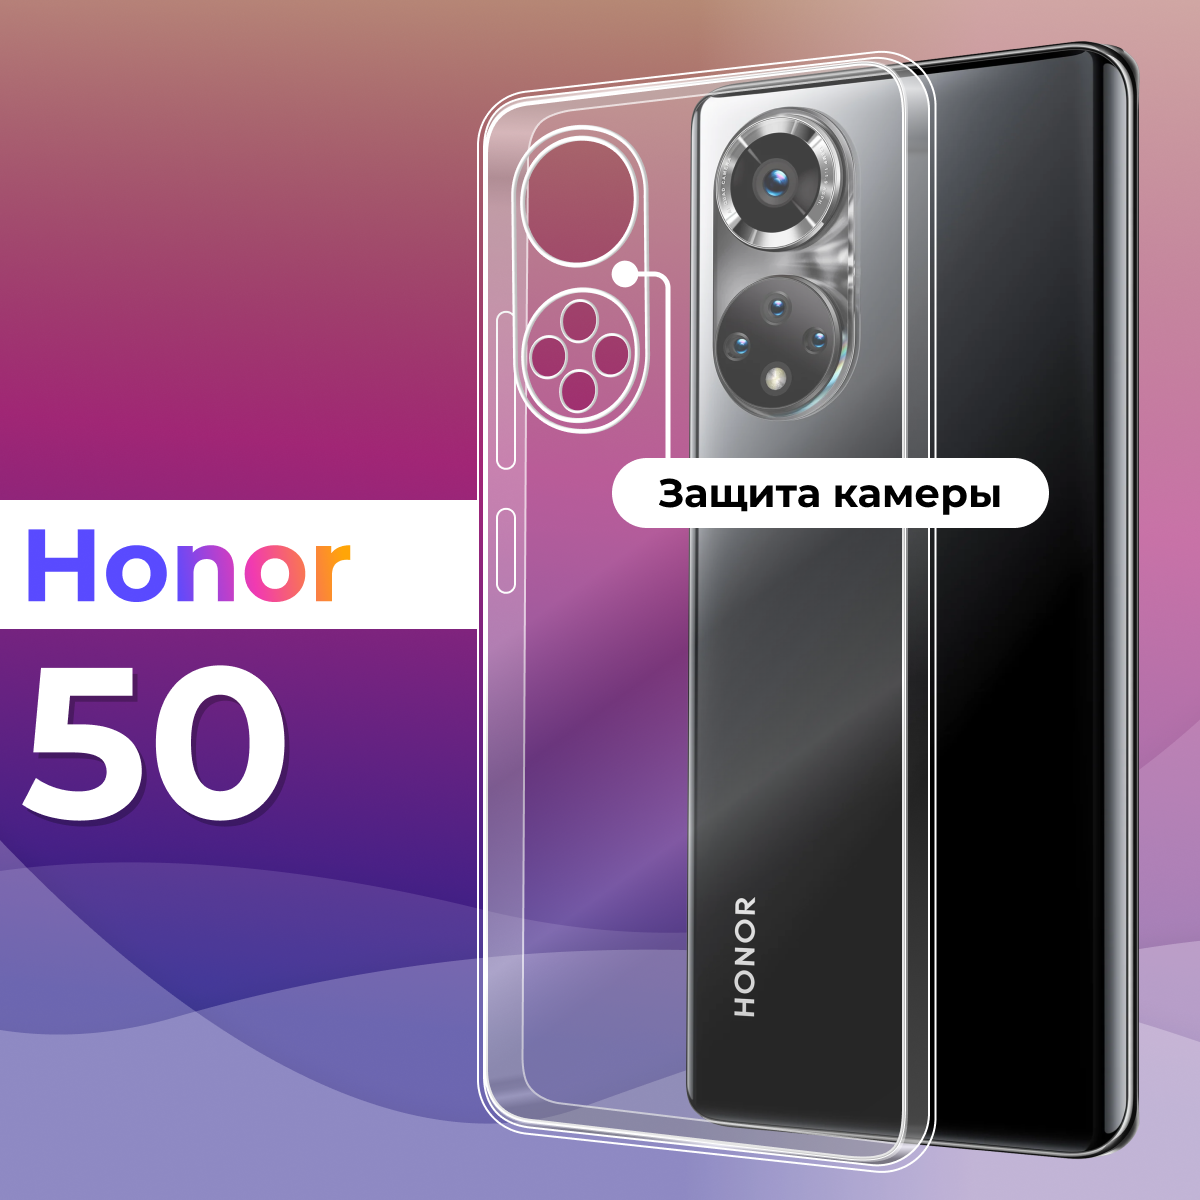 Защитный силиконовый чехол с защитой камеры для телефона Huawei Honor 50 / Тонкий прозрачный чехол на смартфон Хуавей Хонор 50